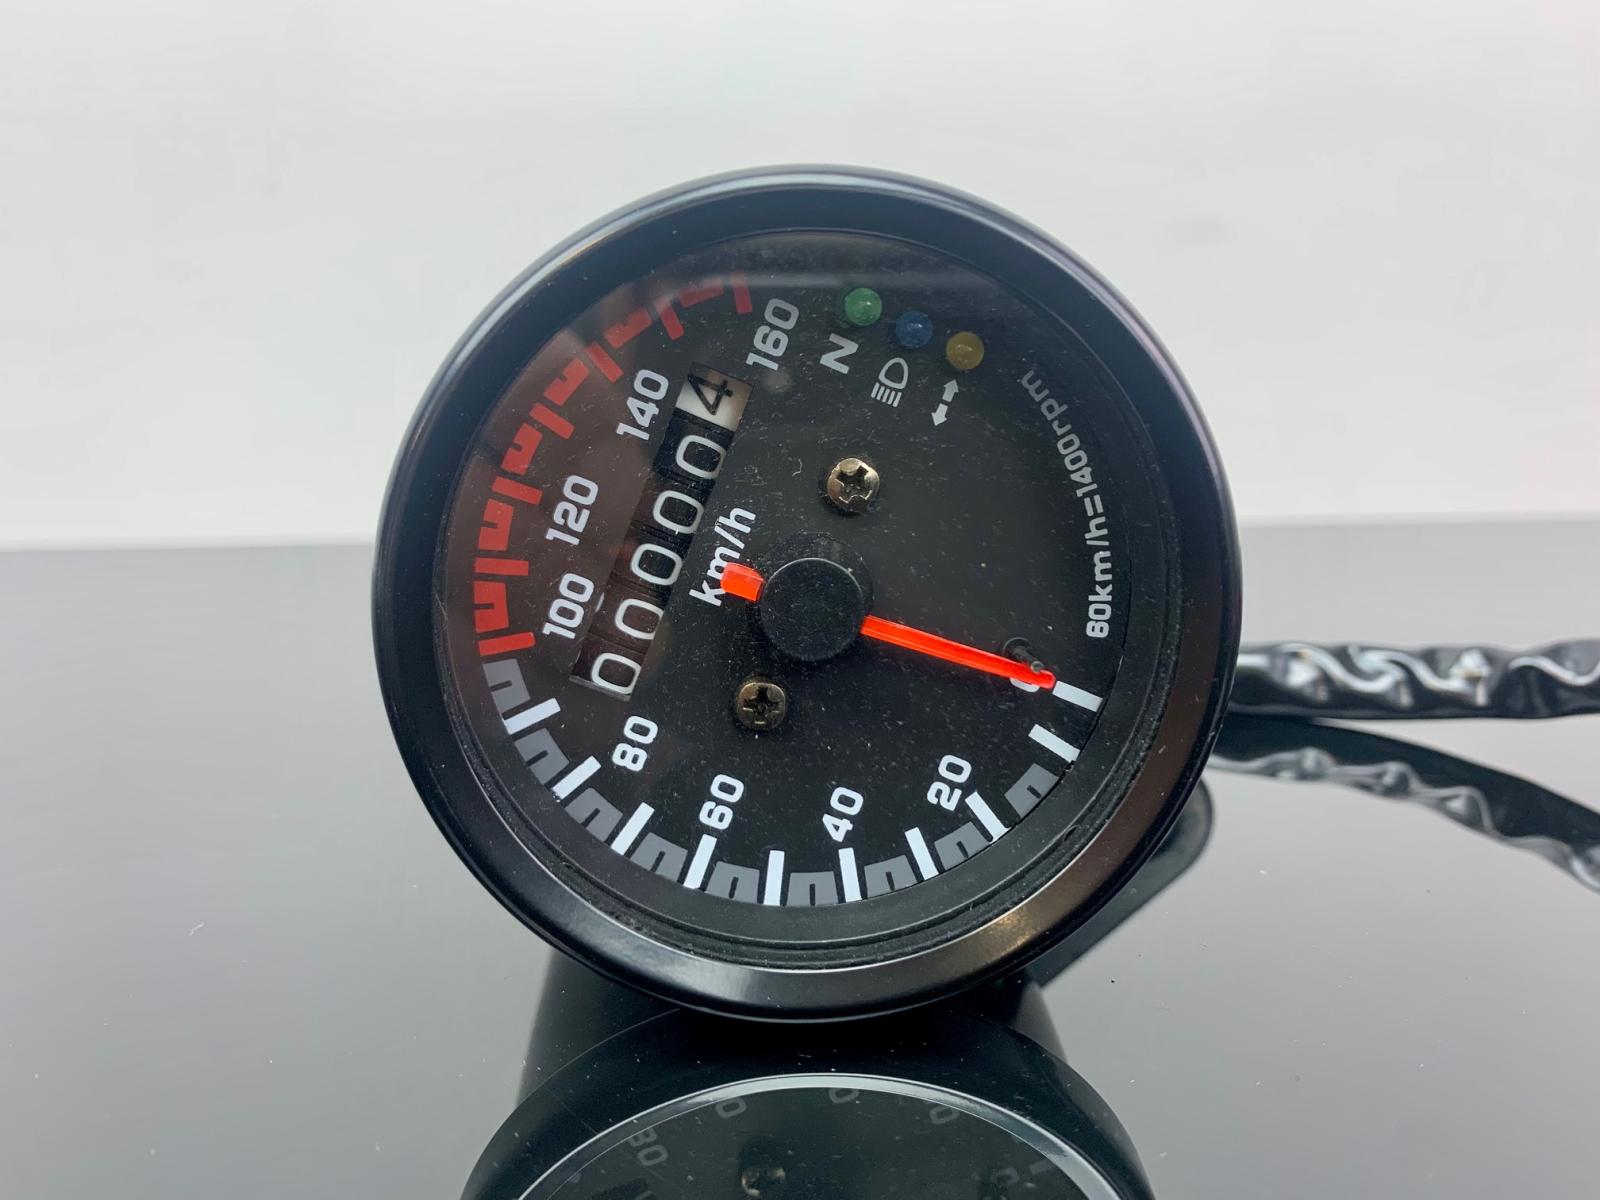 READCLY-Motorrad-Tachometer, 1 Stück Kunststoff und Metall Universal 60 mm  Motorrad-Kilometerzähler mit Anzeige Schwarz